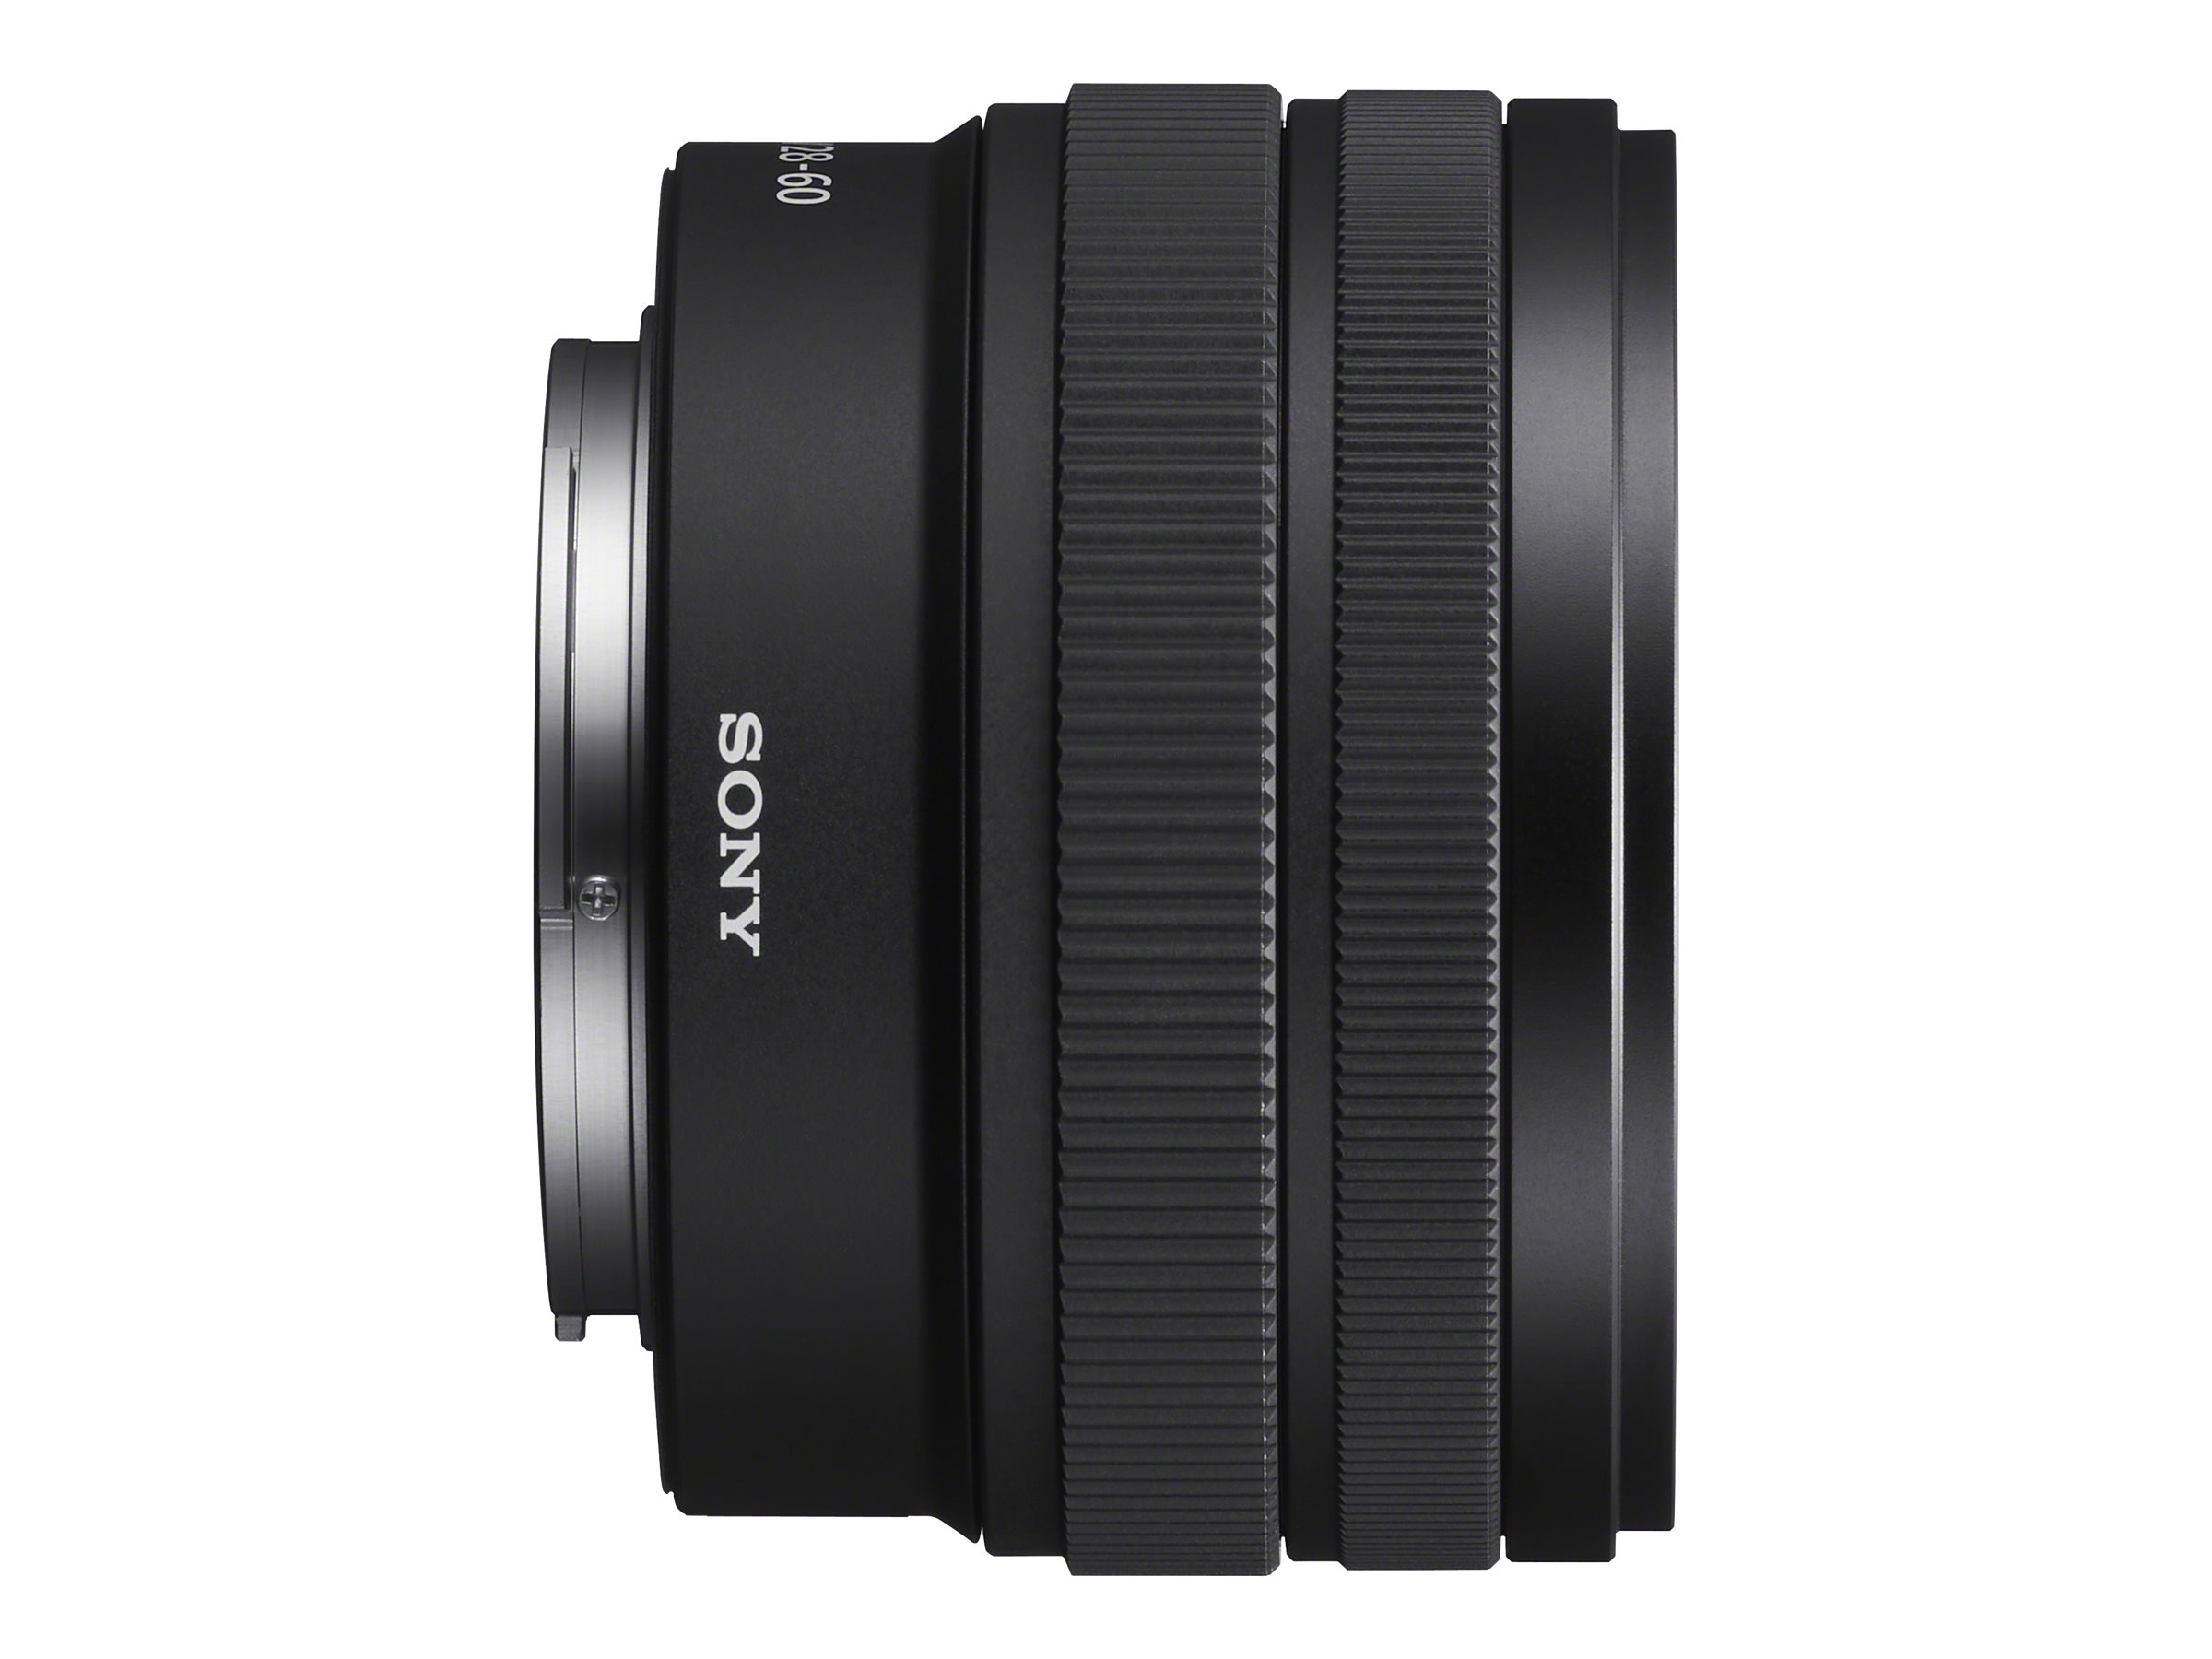 Sony FE f/4.0-5.6 Zoom Lens - 28-60mm - Black - SEL2860